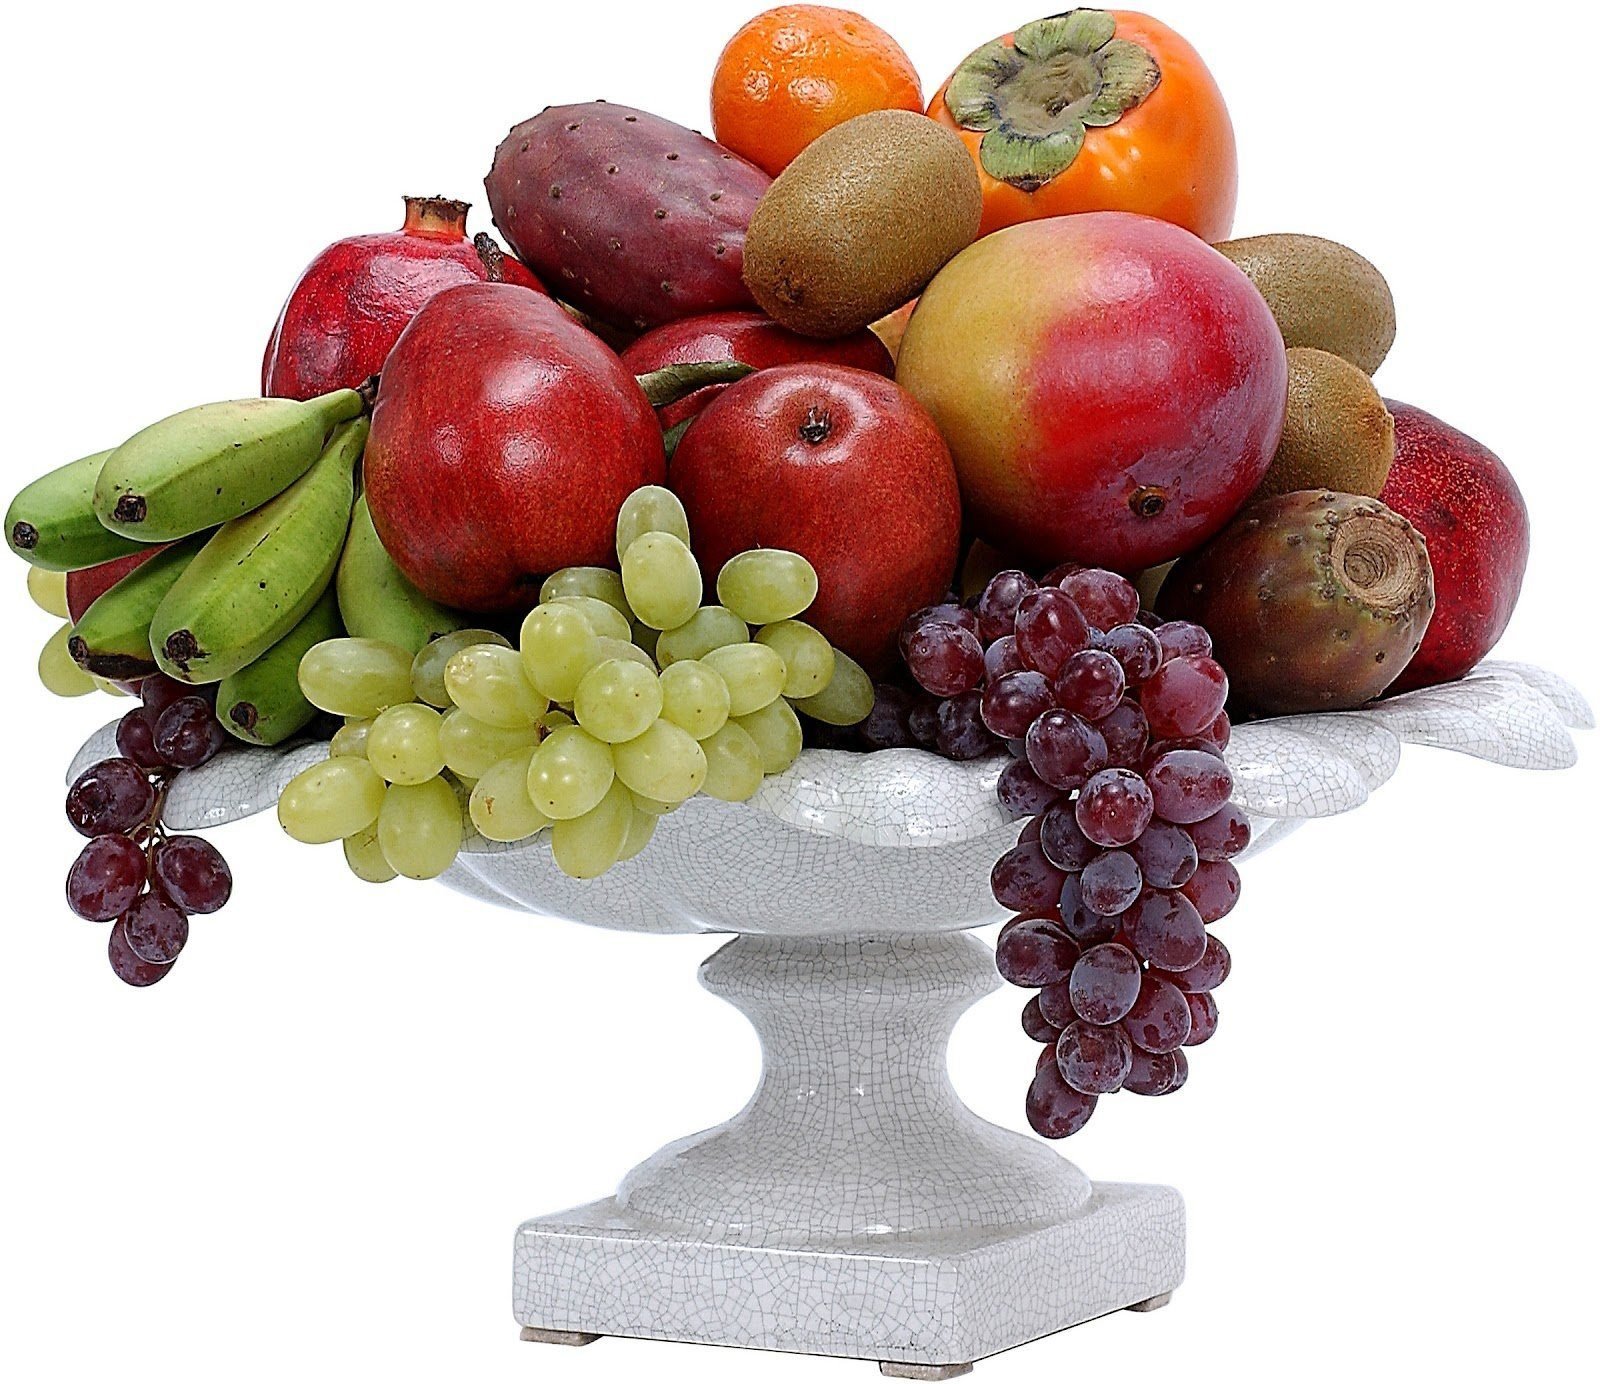 В вазе лежат 4 разных фрукта. Ваза с фруктами. Фрукты в вазе. Ваза с фруктами и овощами. Ваза с фруктами на прозрачном фоне.